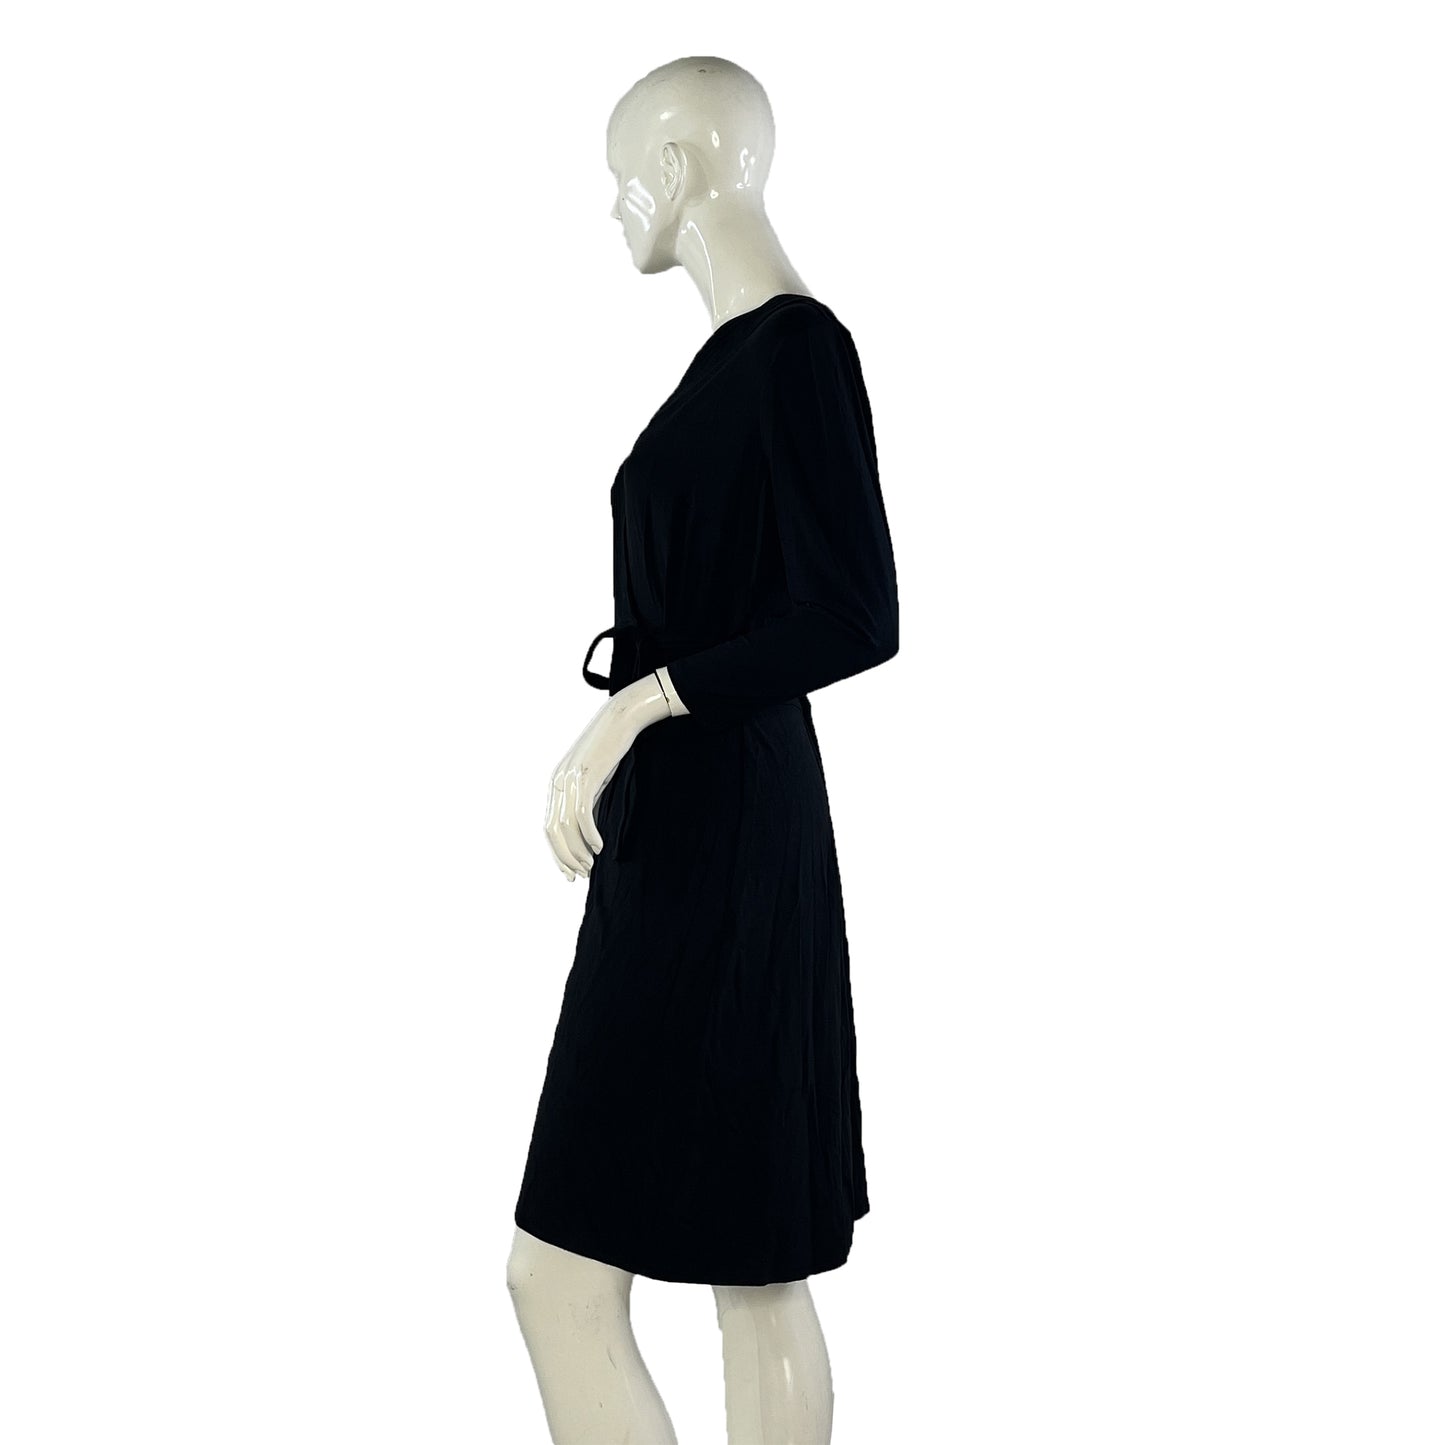 Ann Taylor Wrap Dress Black Size 8 SKU 000067-6